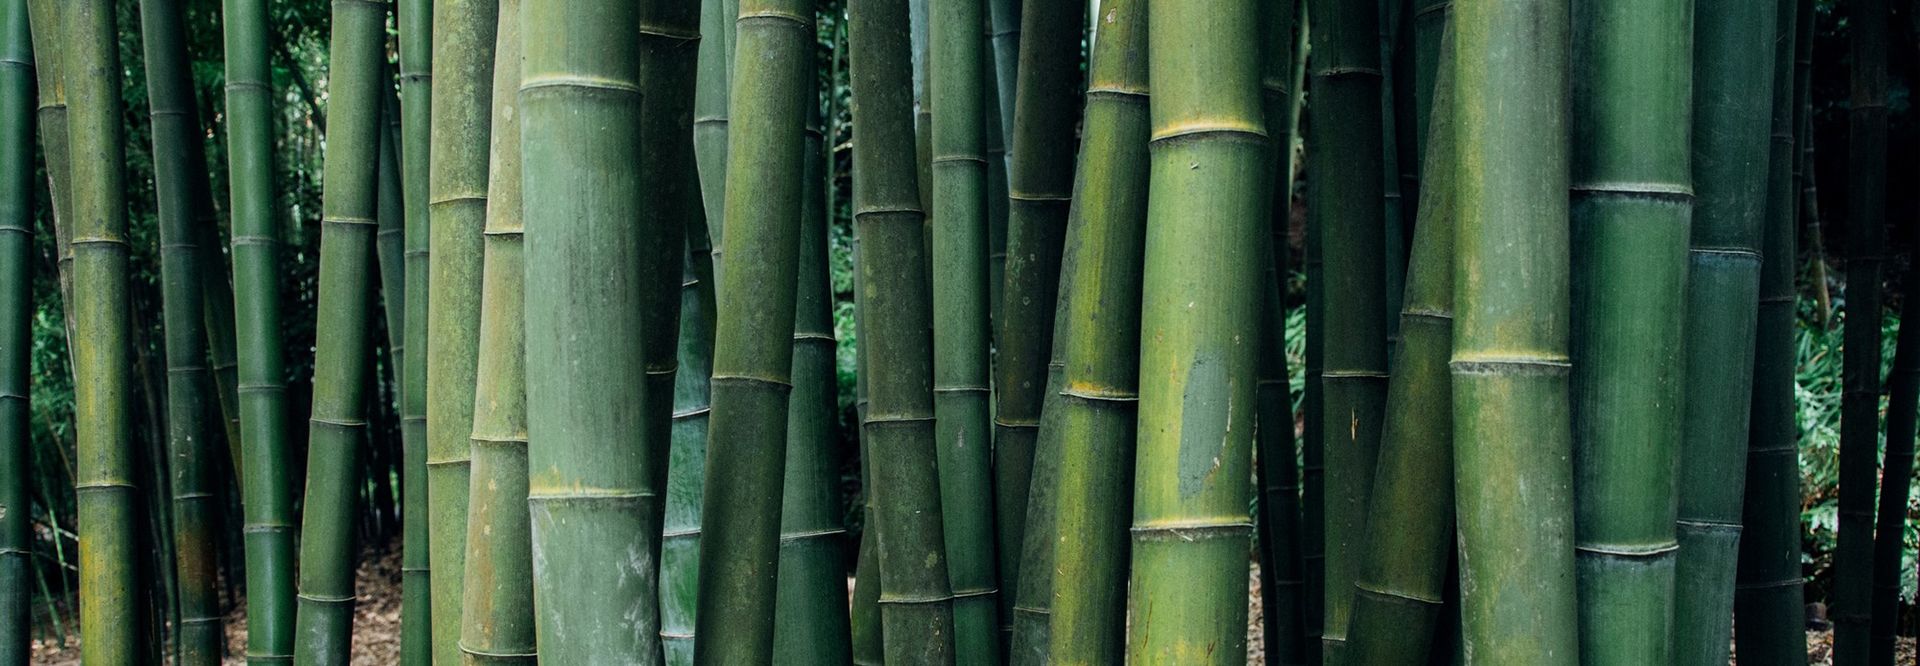 Bambú, material ecológico y sostenible